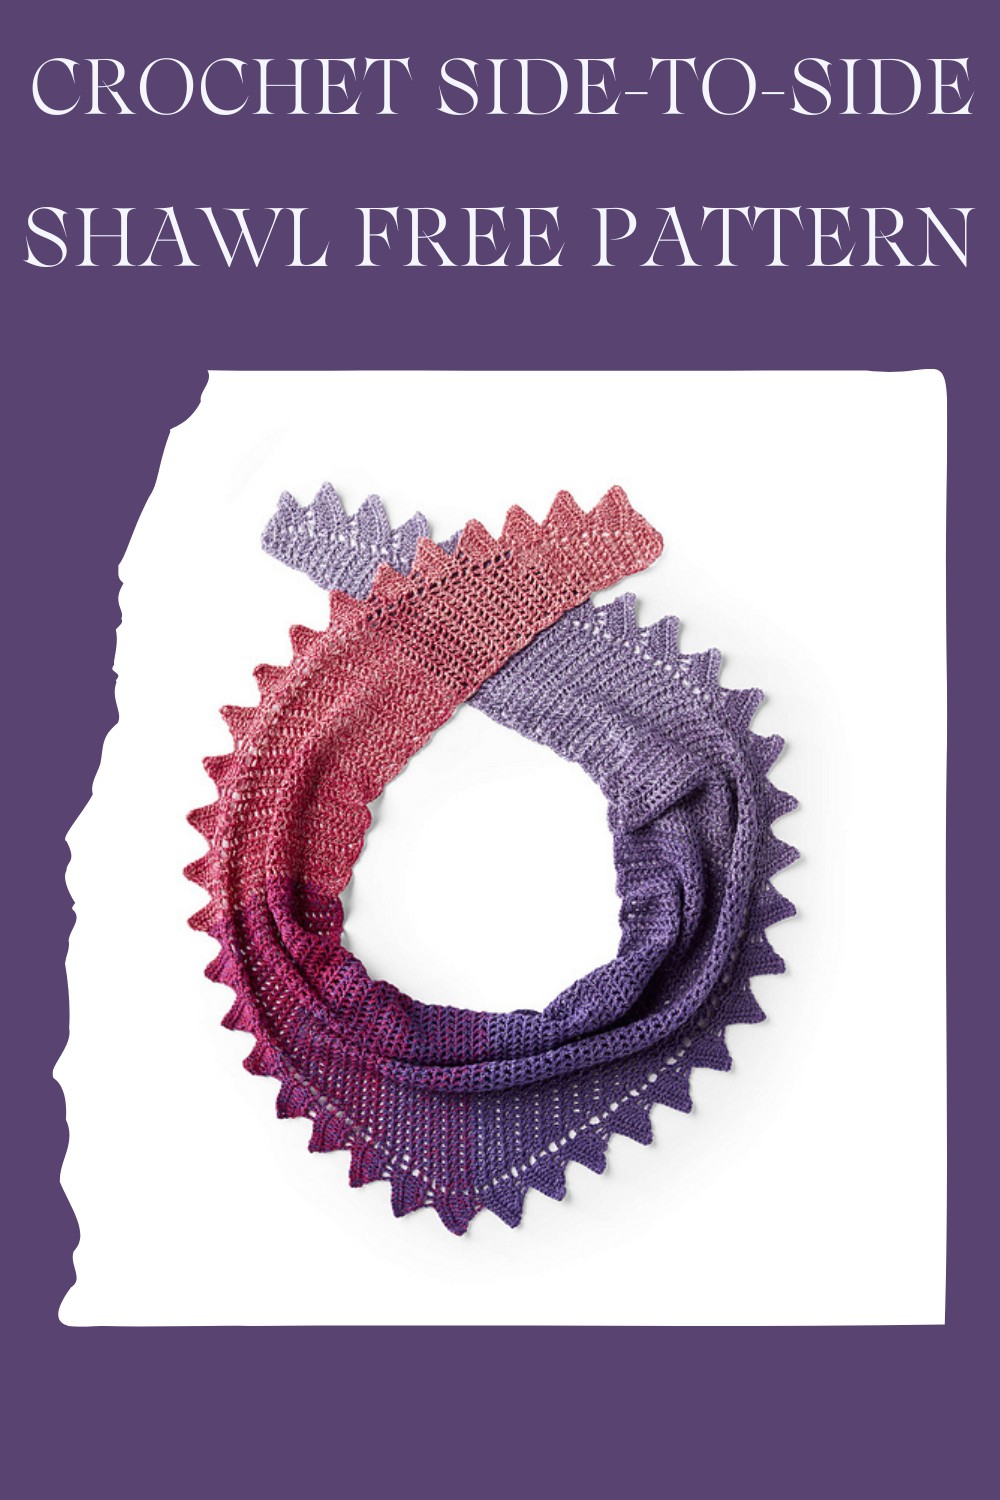  Crochet Side-to-side Shawl Free Pattern